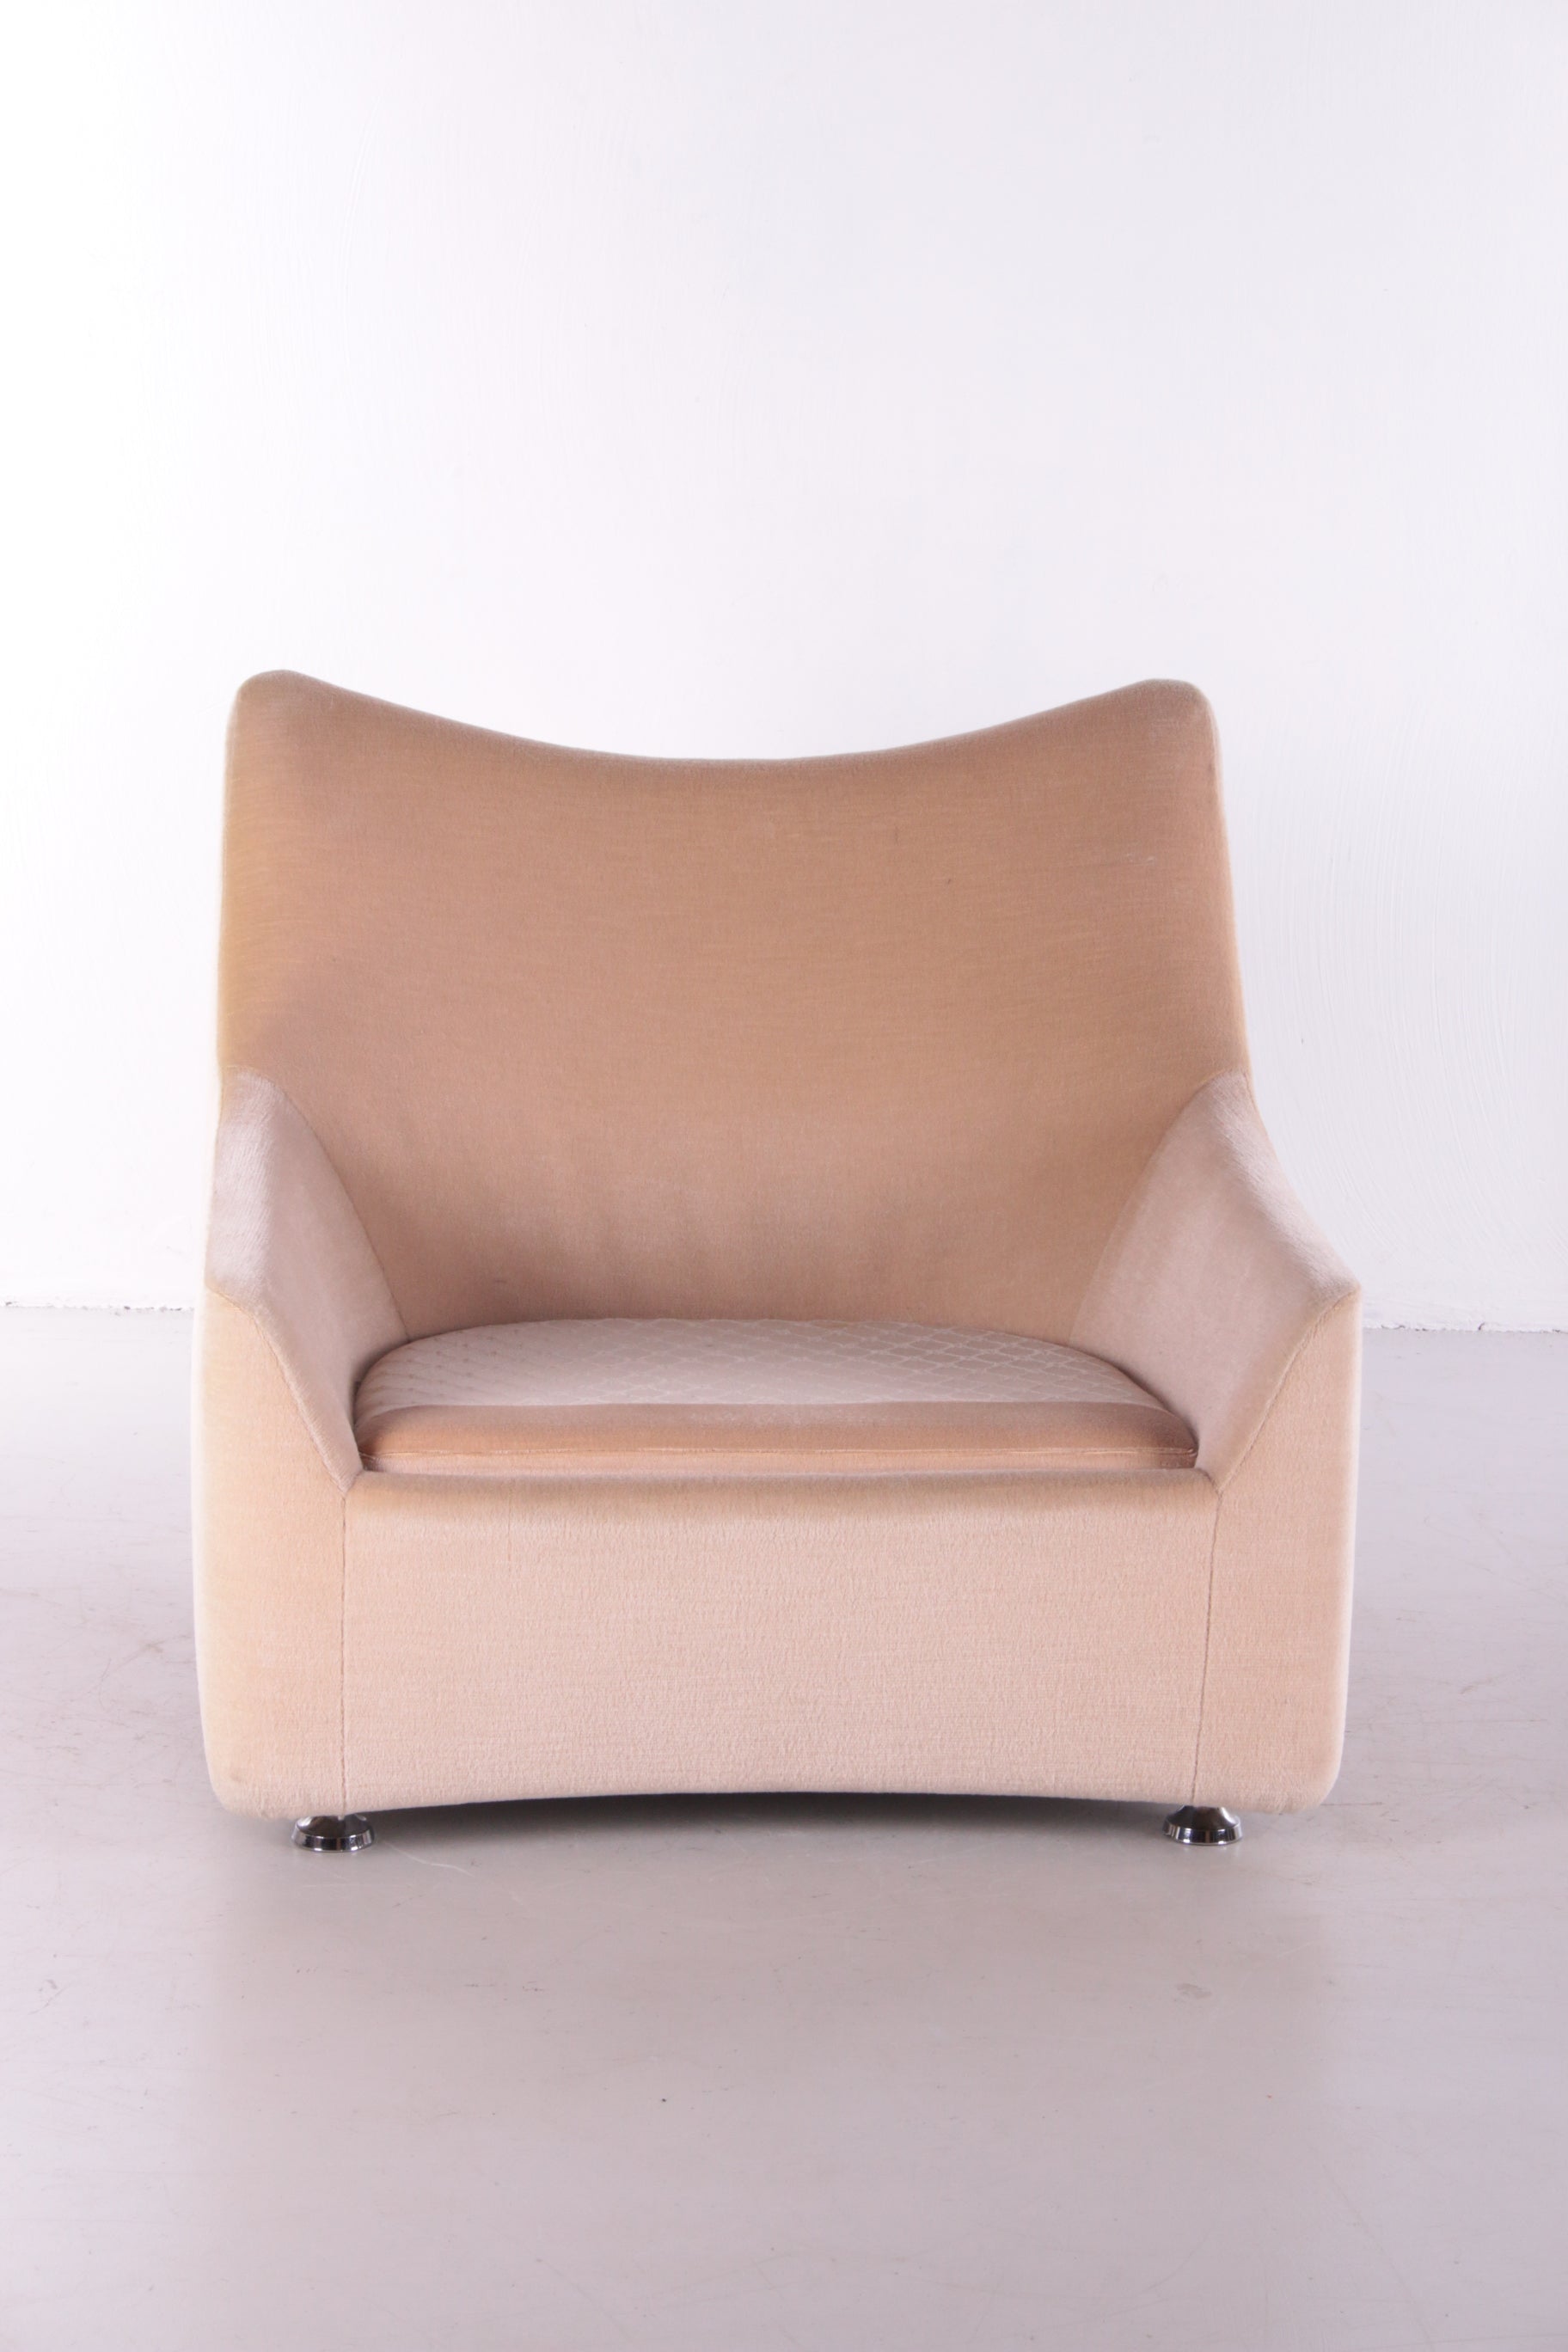 Vintage design lounge chair Velvet from the 70szonder kussen